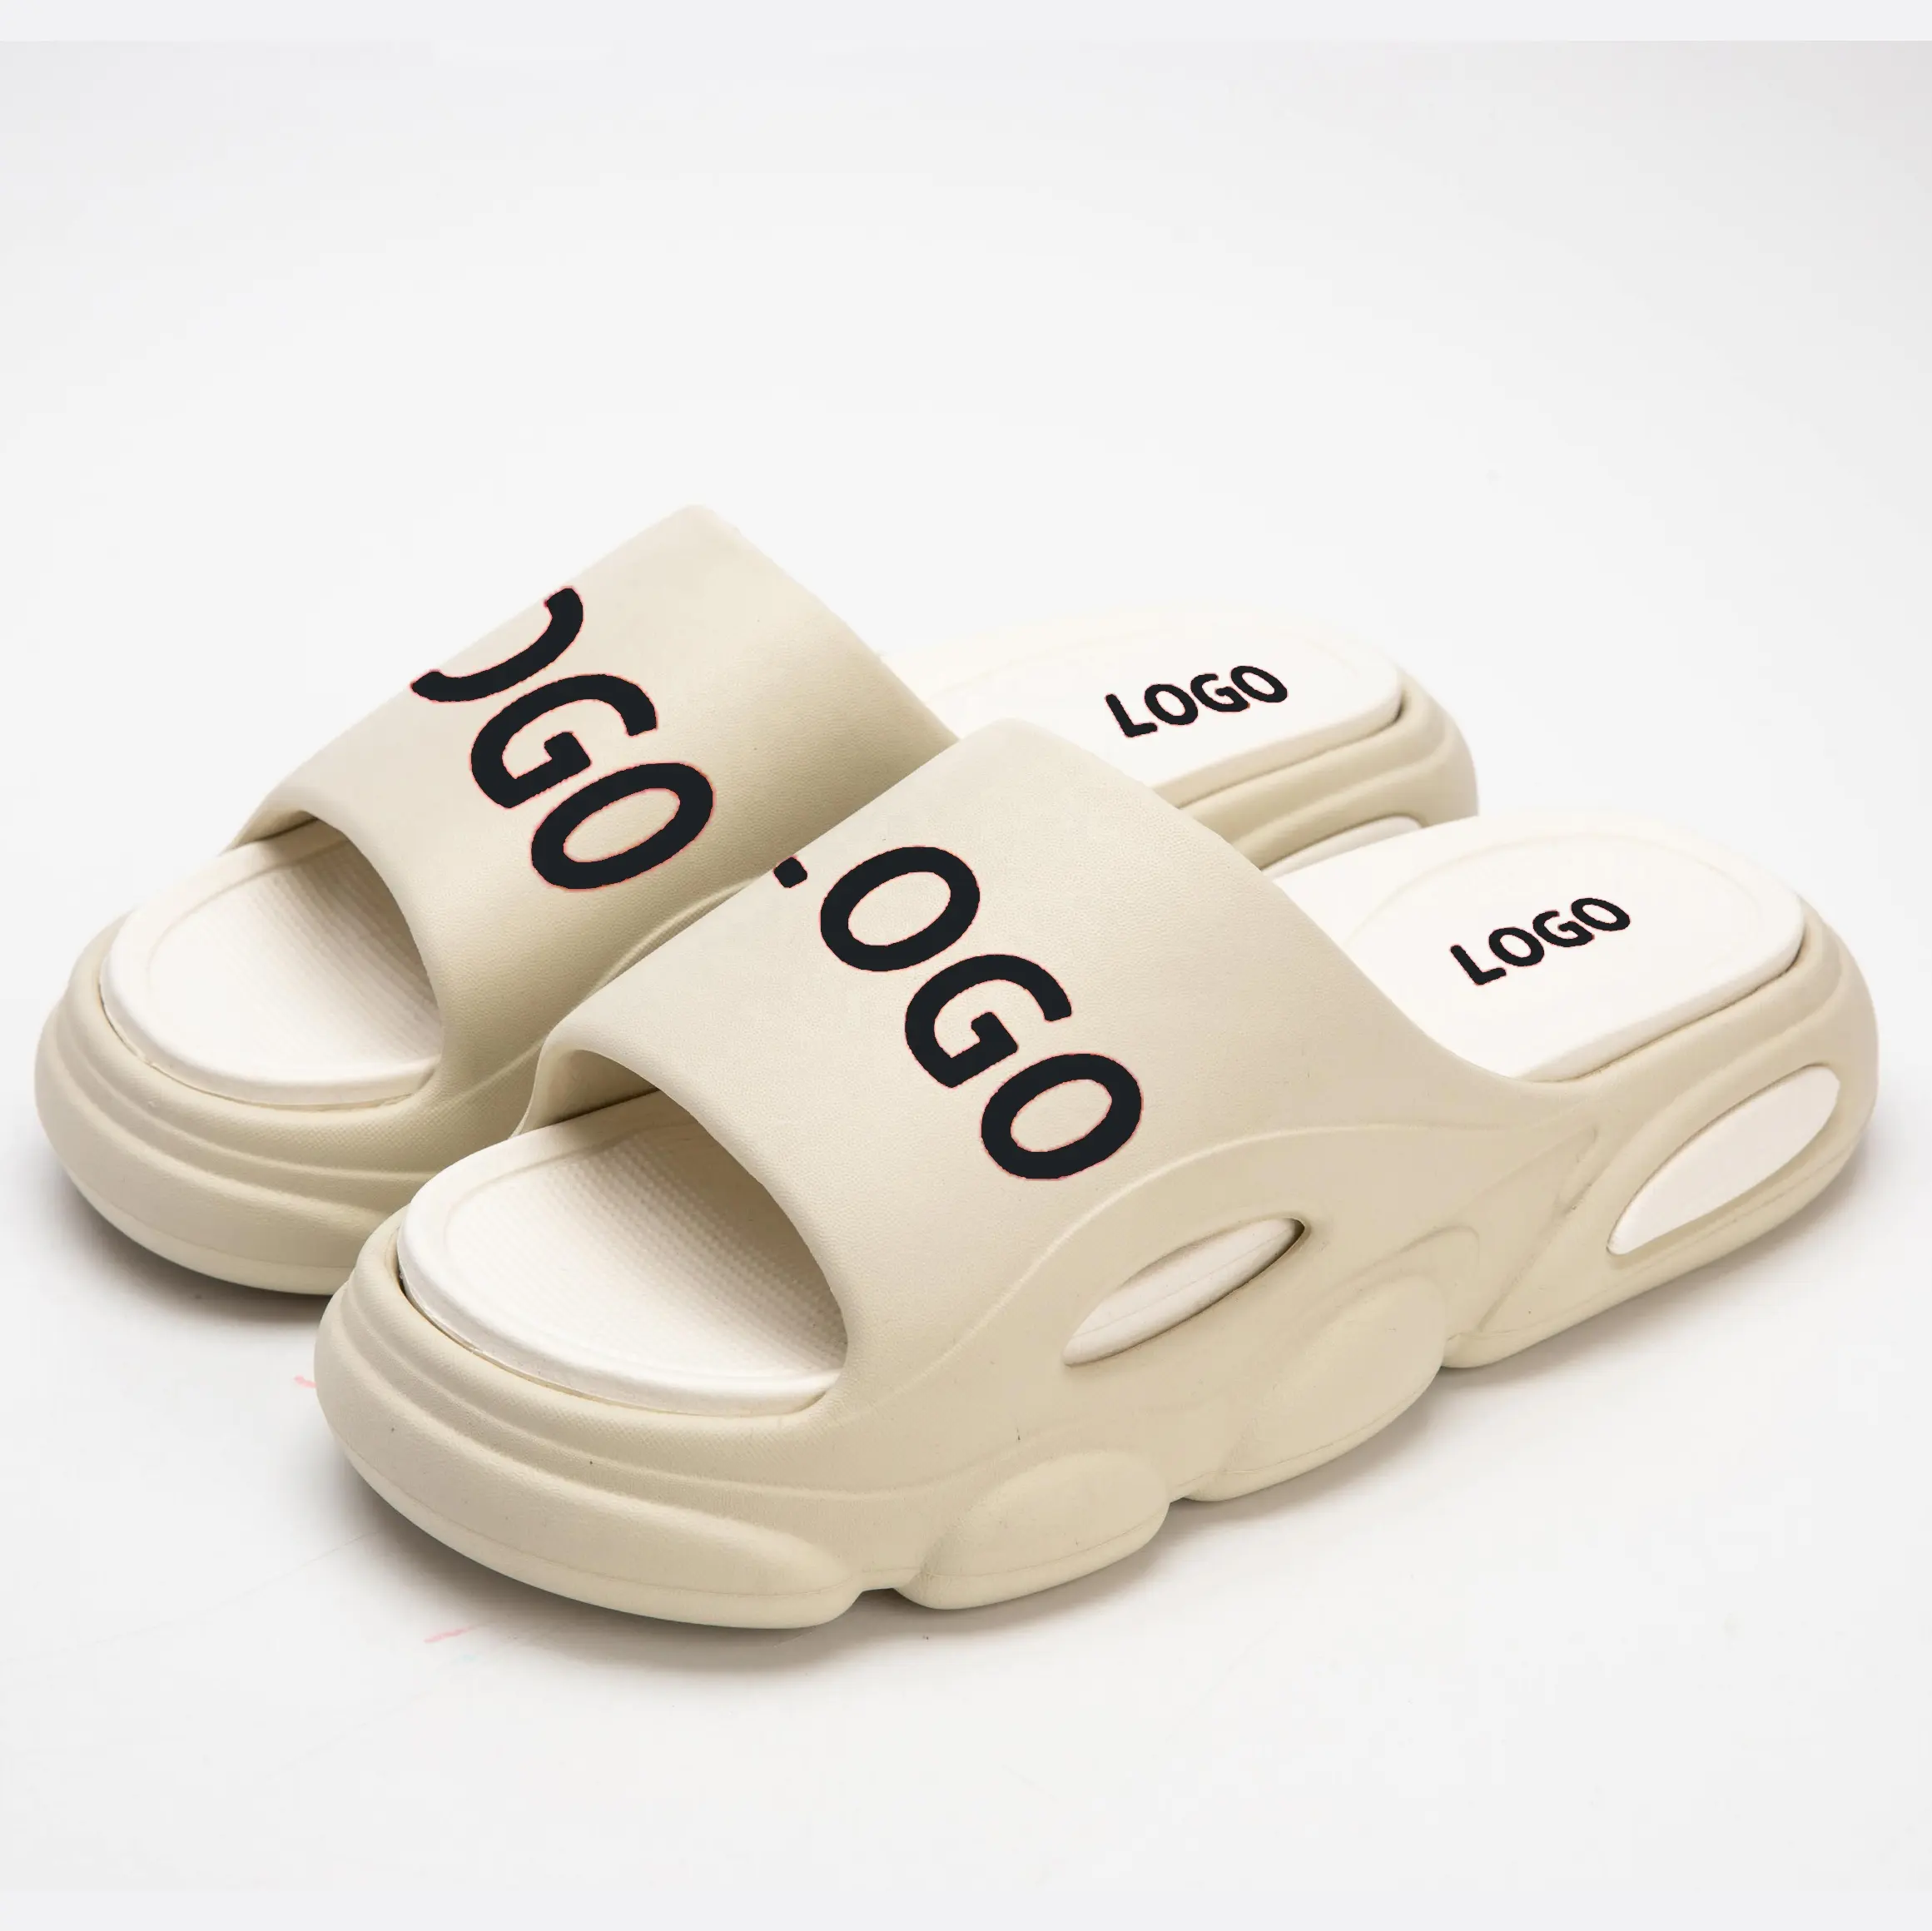 Custom designer Printed Slides Slippers EVA soft embossed Beach men slippers for Men for Women